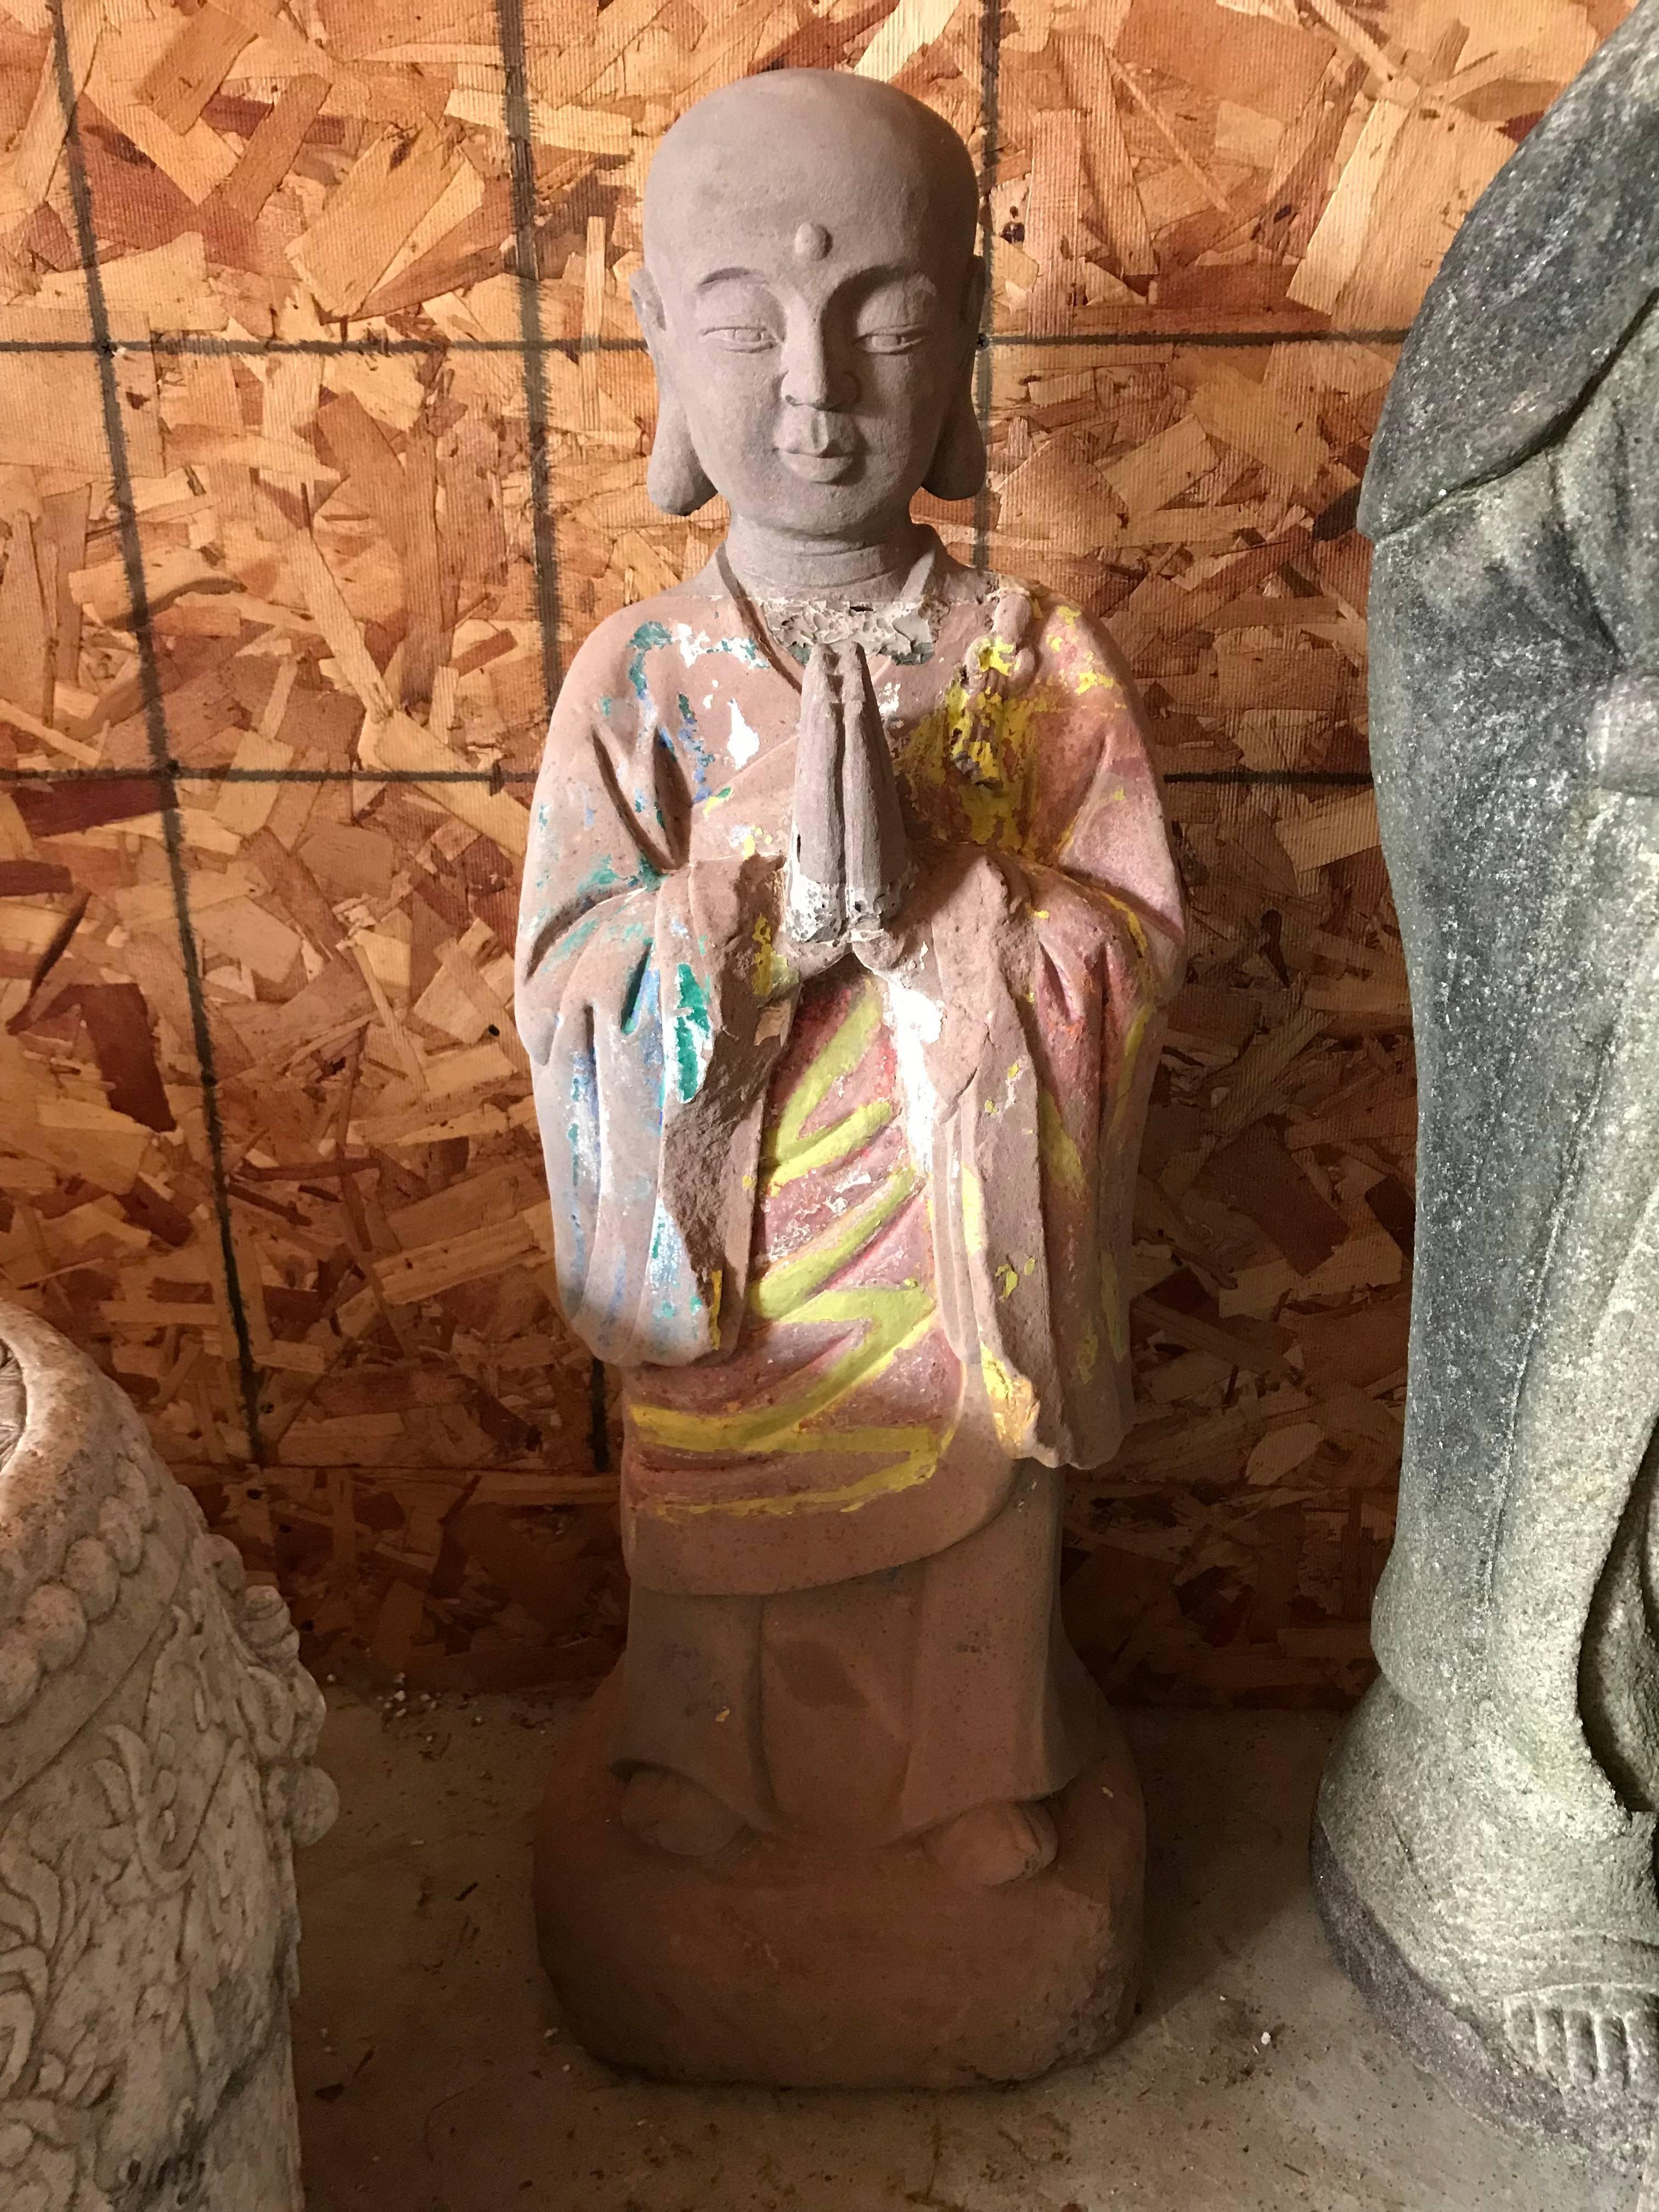 Chine, une authentique figure antique de temple en pierre calcaire, sculptée et peinte à la main, représentant le vénérable lohan, Kasyapa.

Cette magnifique sculpture bouddhiste apportera sérénité et style intemporel à votre maison, votre bureau,